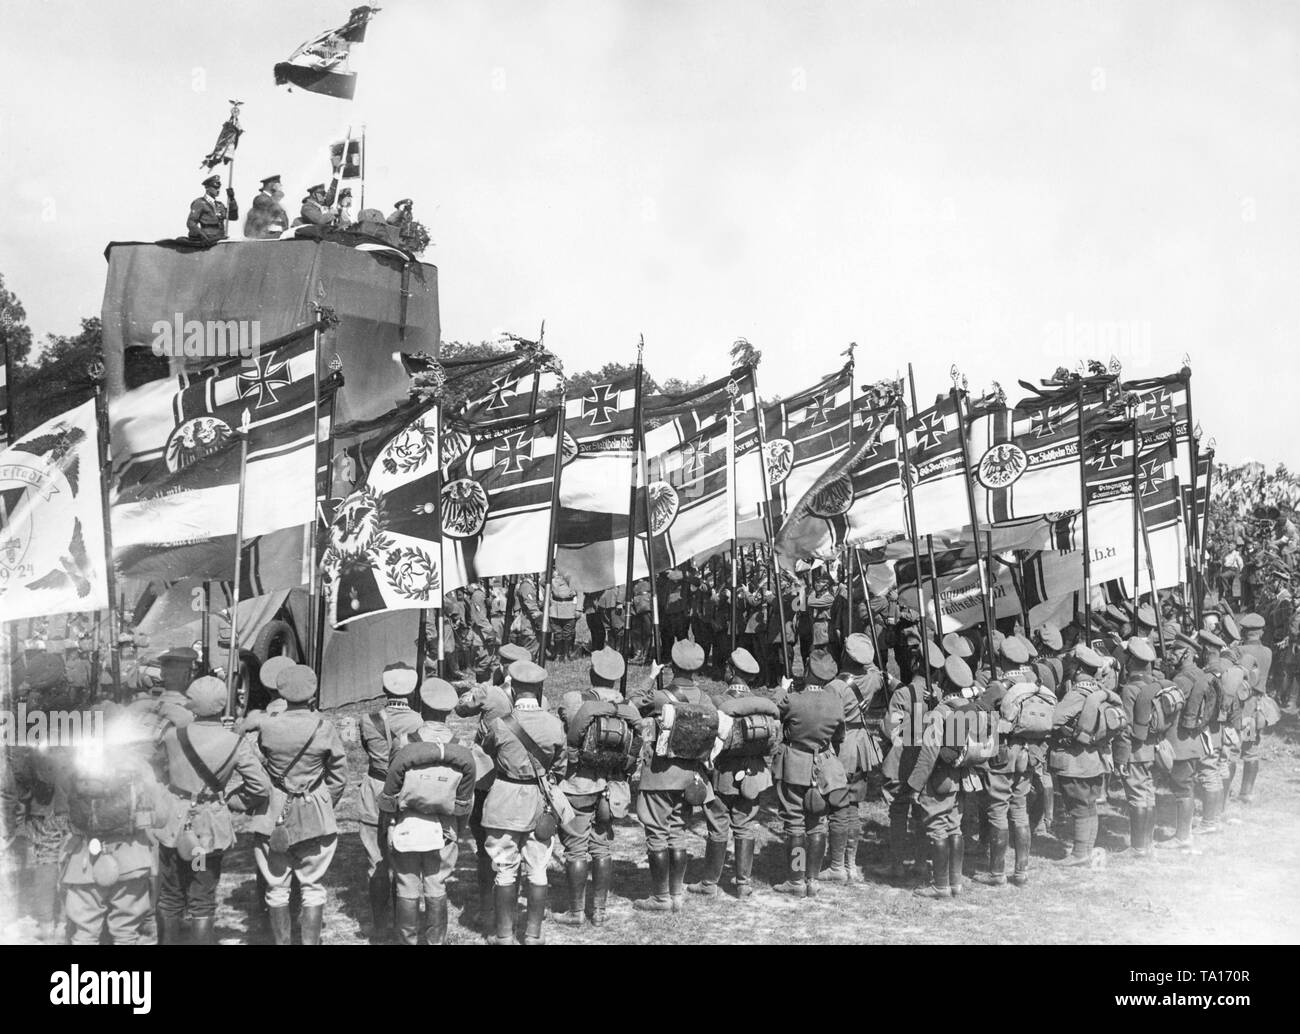 Während der Stahlhelm, Tag, war auch eine große Fahne Weihe durchgeführt. Vor allem die ehemaligen kaiserlichen Flagge Reichskriegsflagge (Krieg) war vertreten, was besonders war unter Stahlhelm Mitgliedern beliebt. Stockfoto